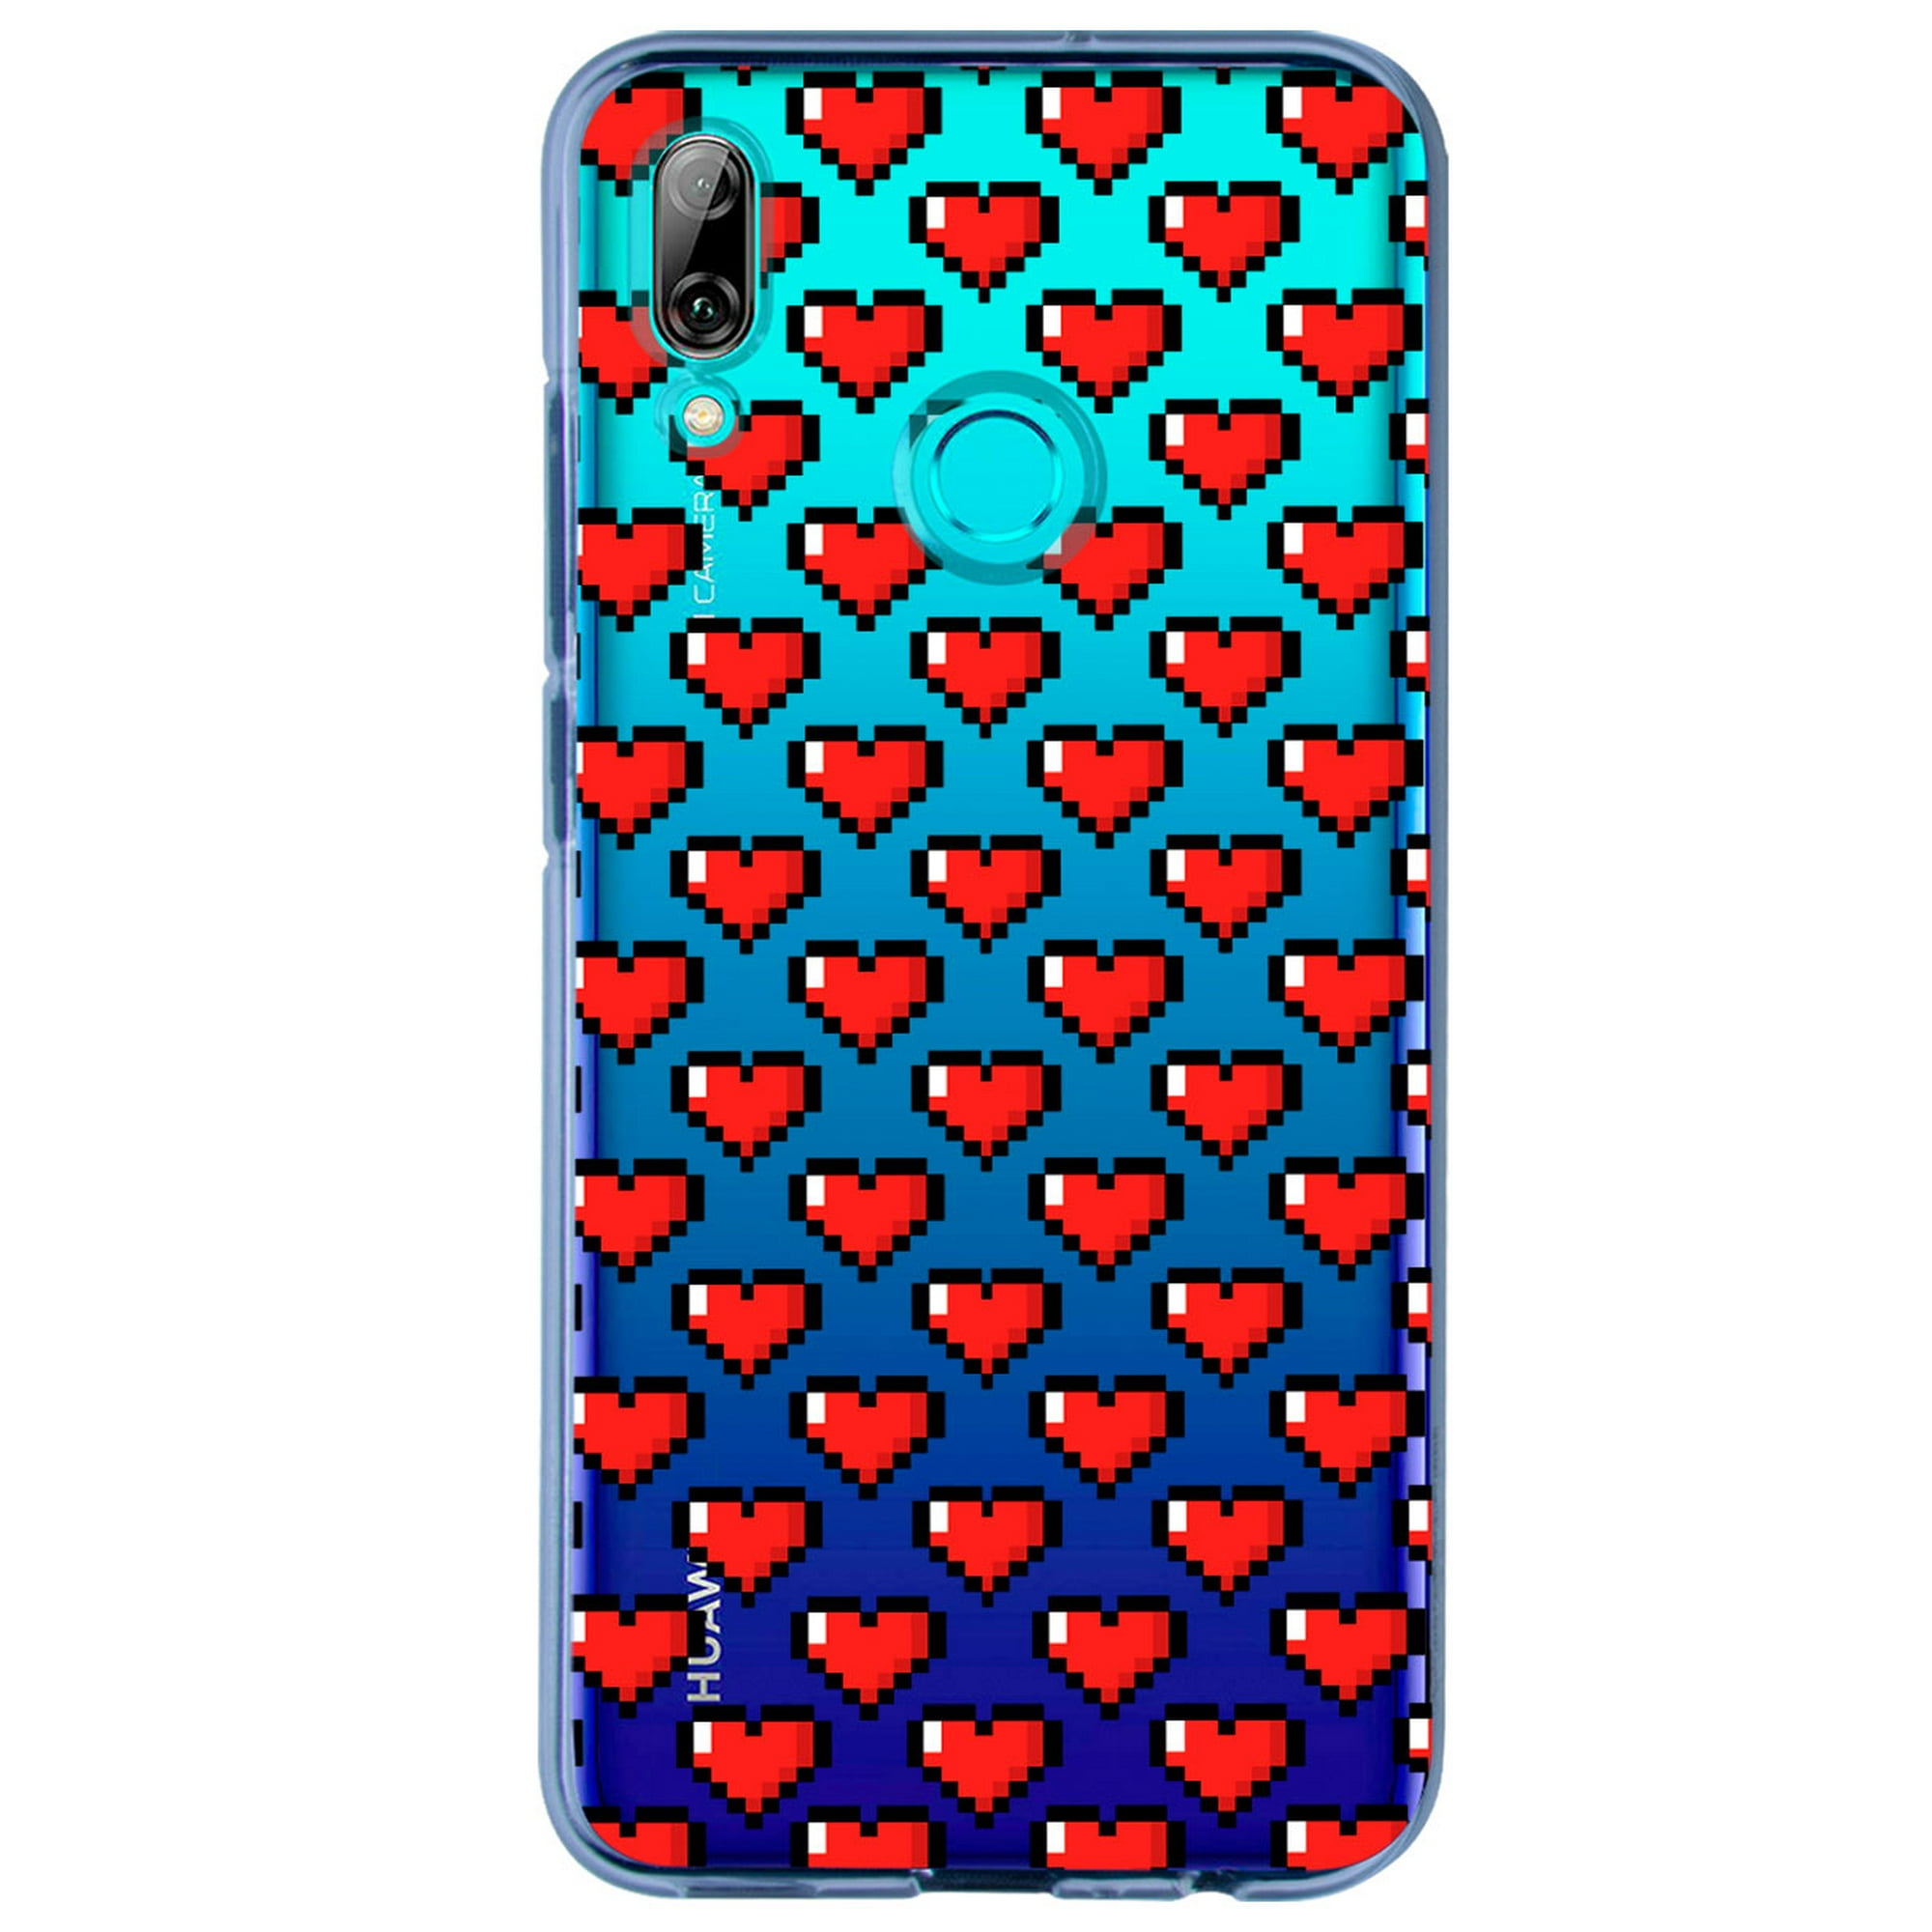 Funda para huawei p smart 2019 con diseño corazones pixel instacase love collection